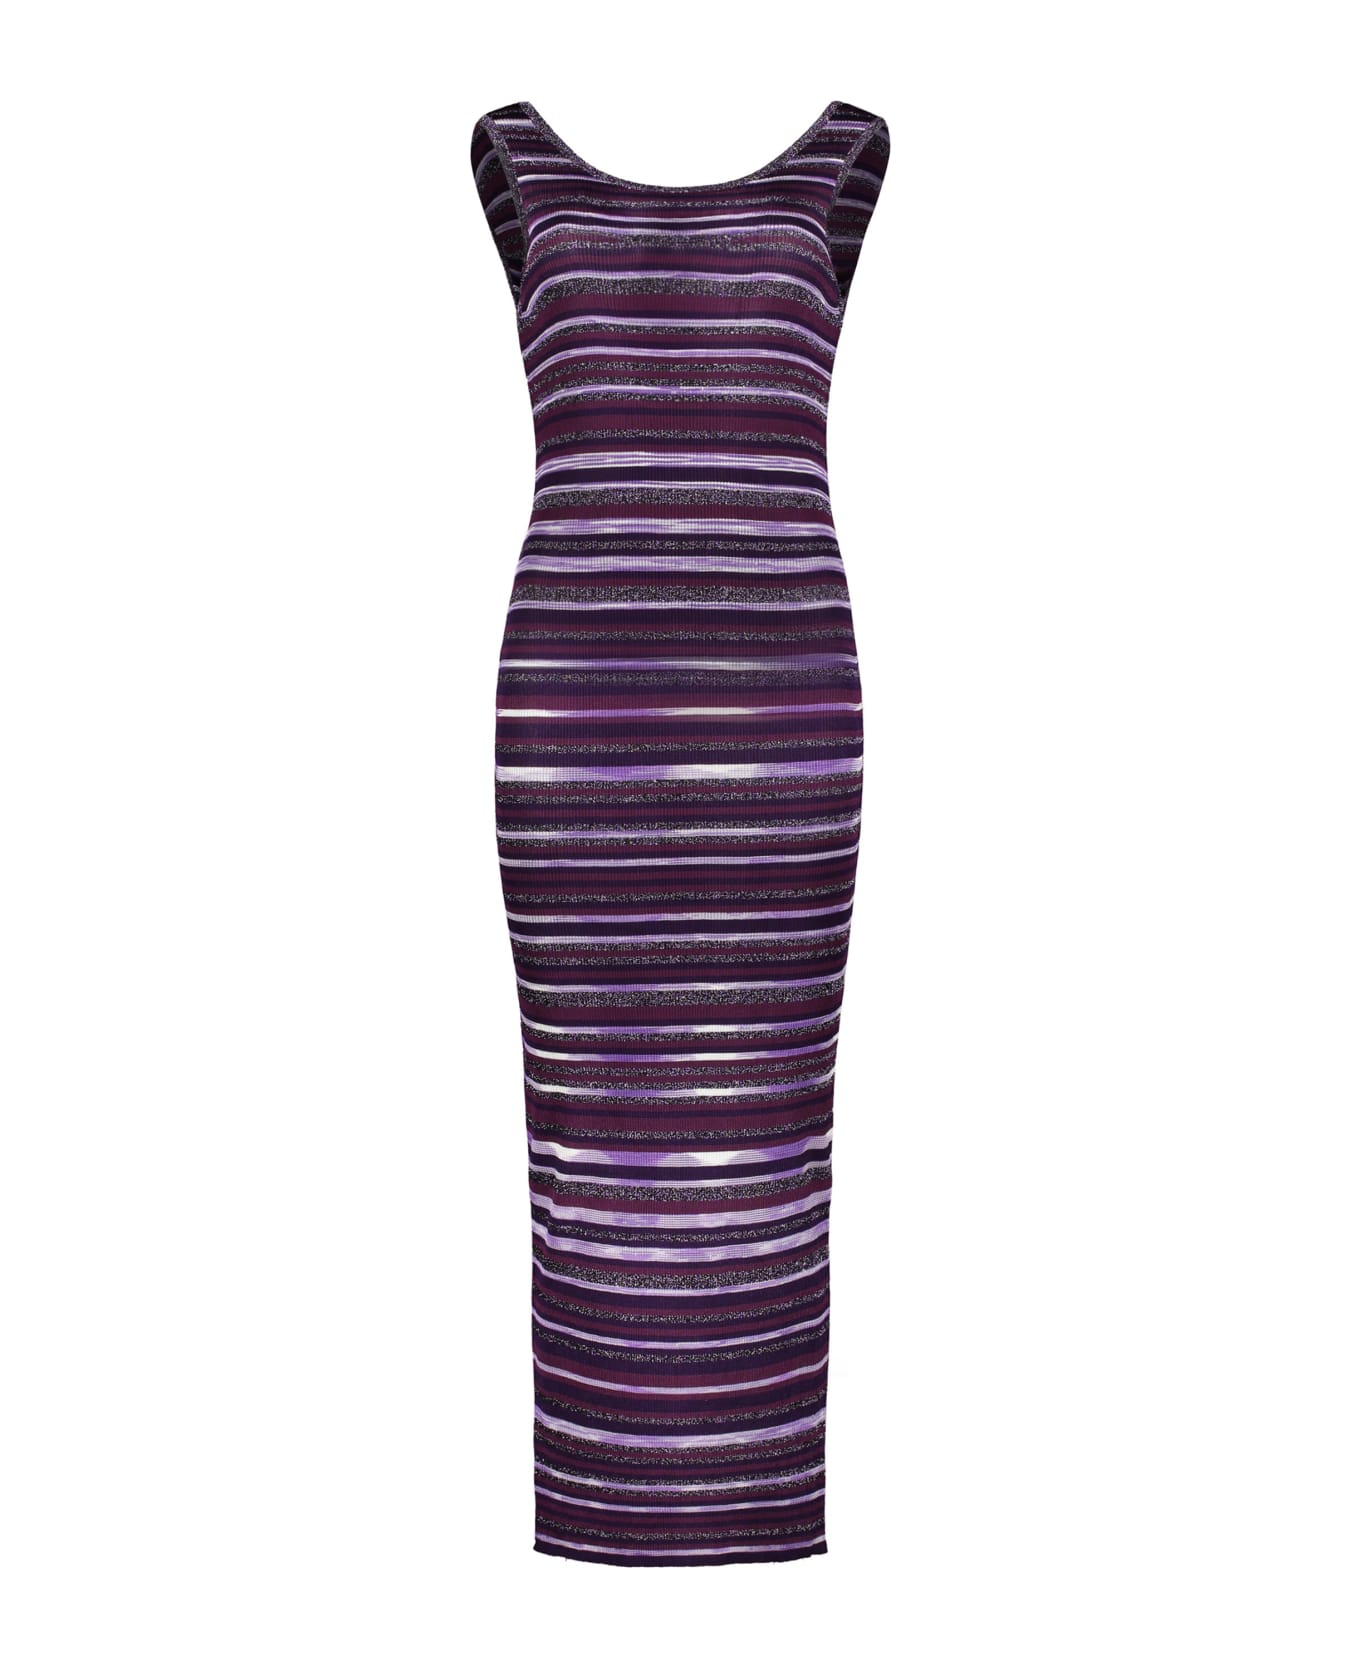 M Missoni Knitted Dress - purple